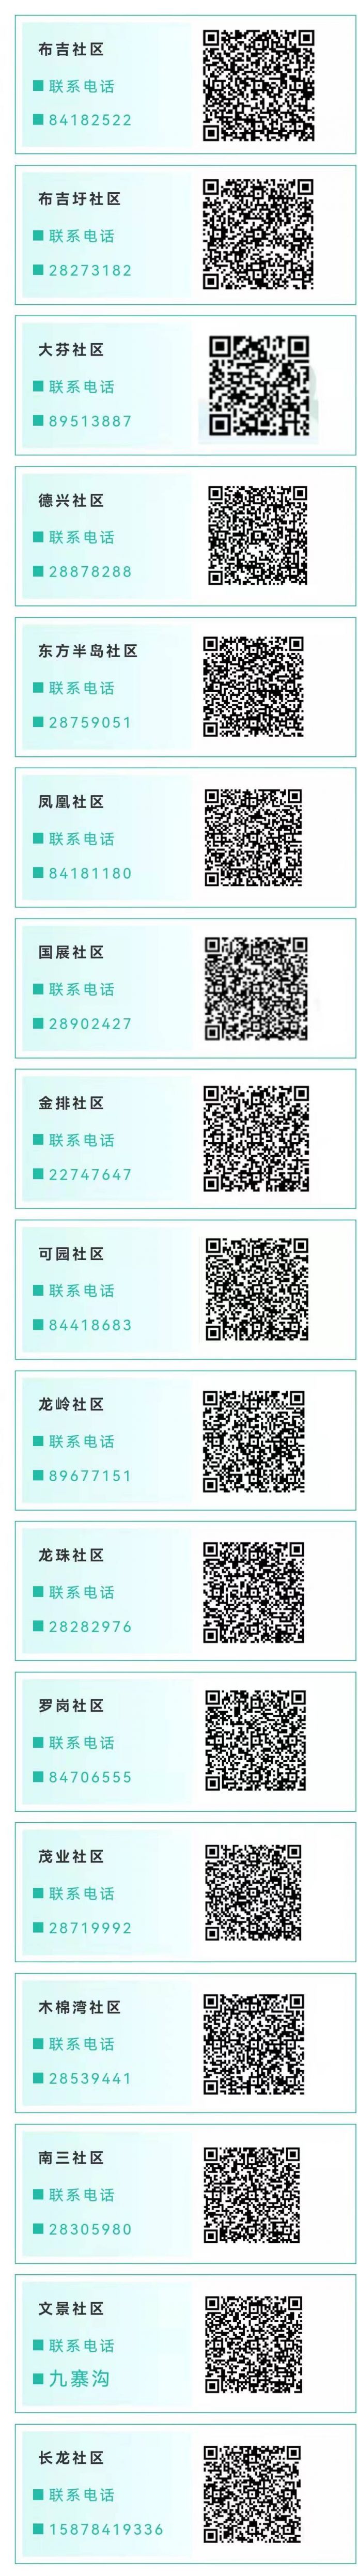 深圳龙岗区布吉街道志愿者招募信息(3月17日发布)